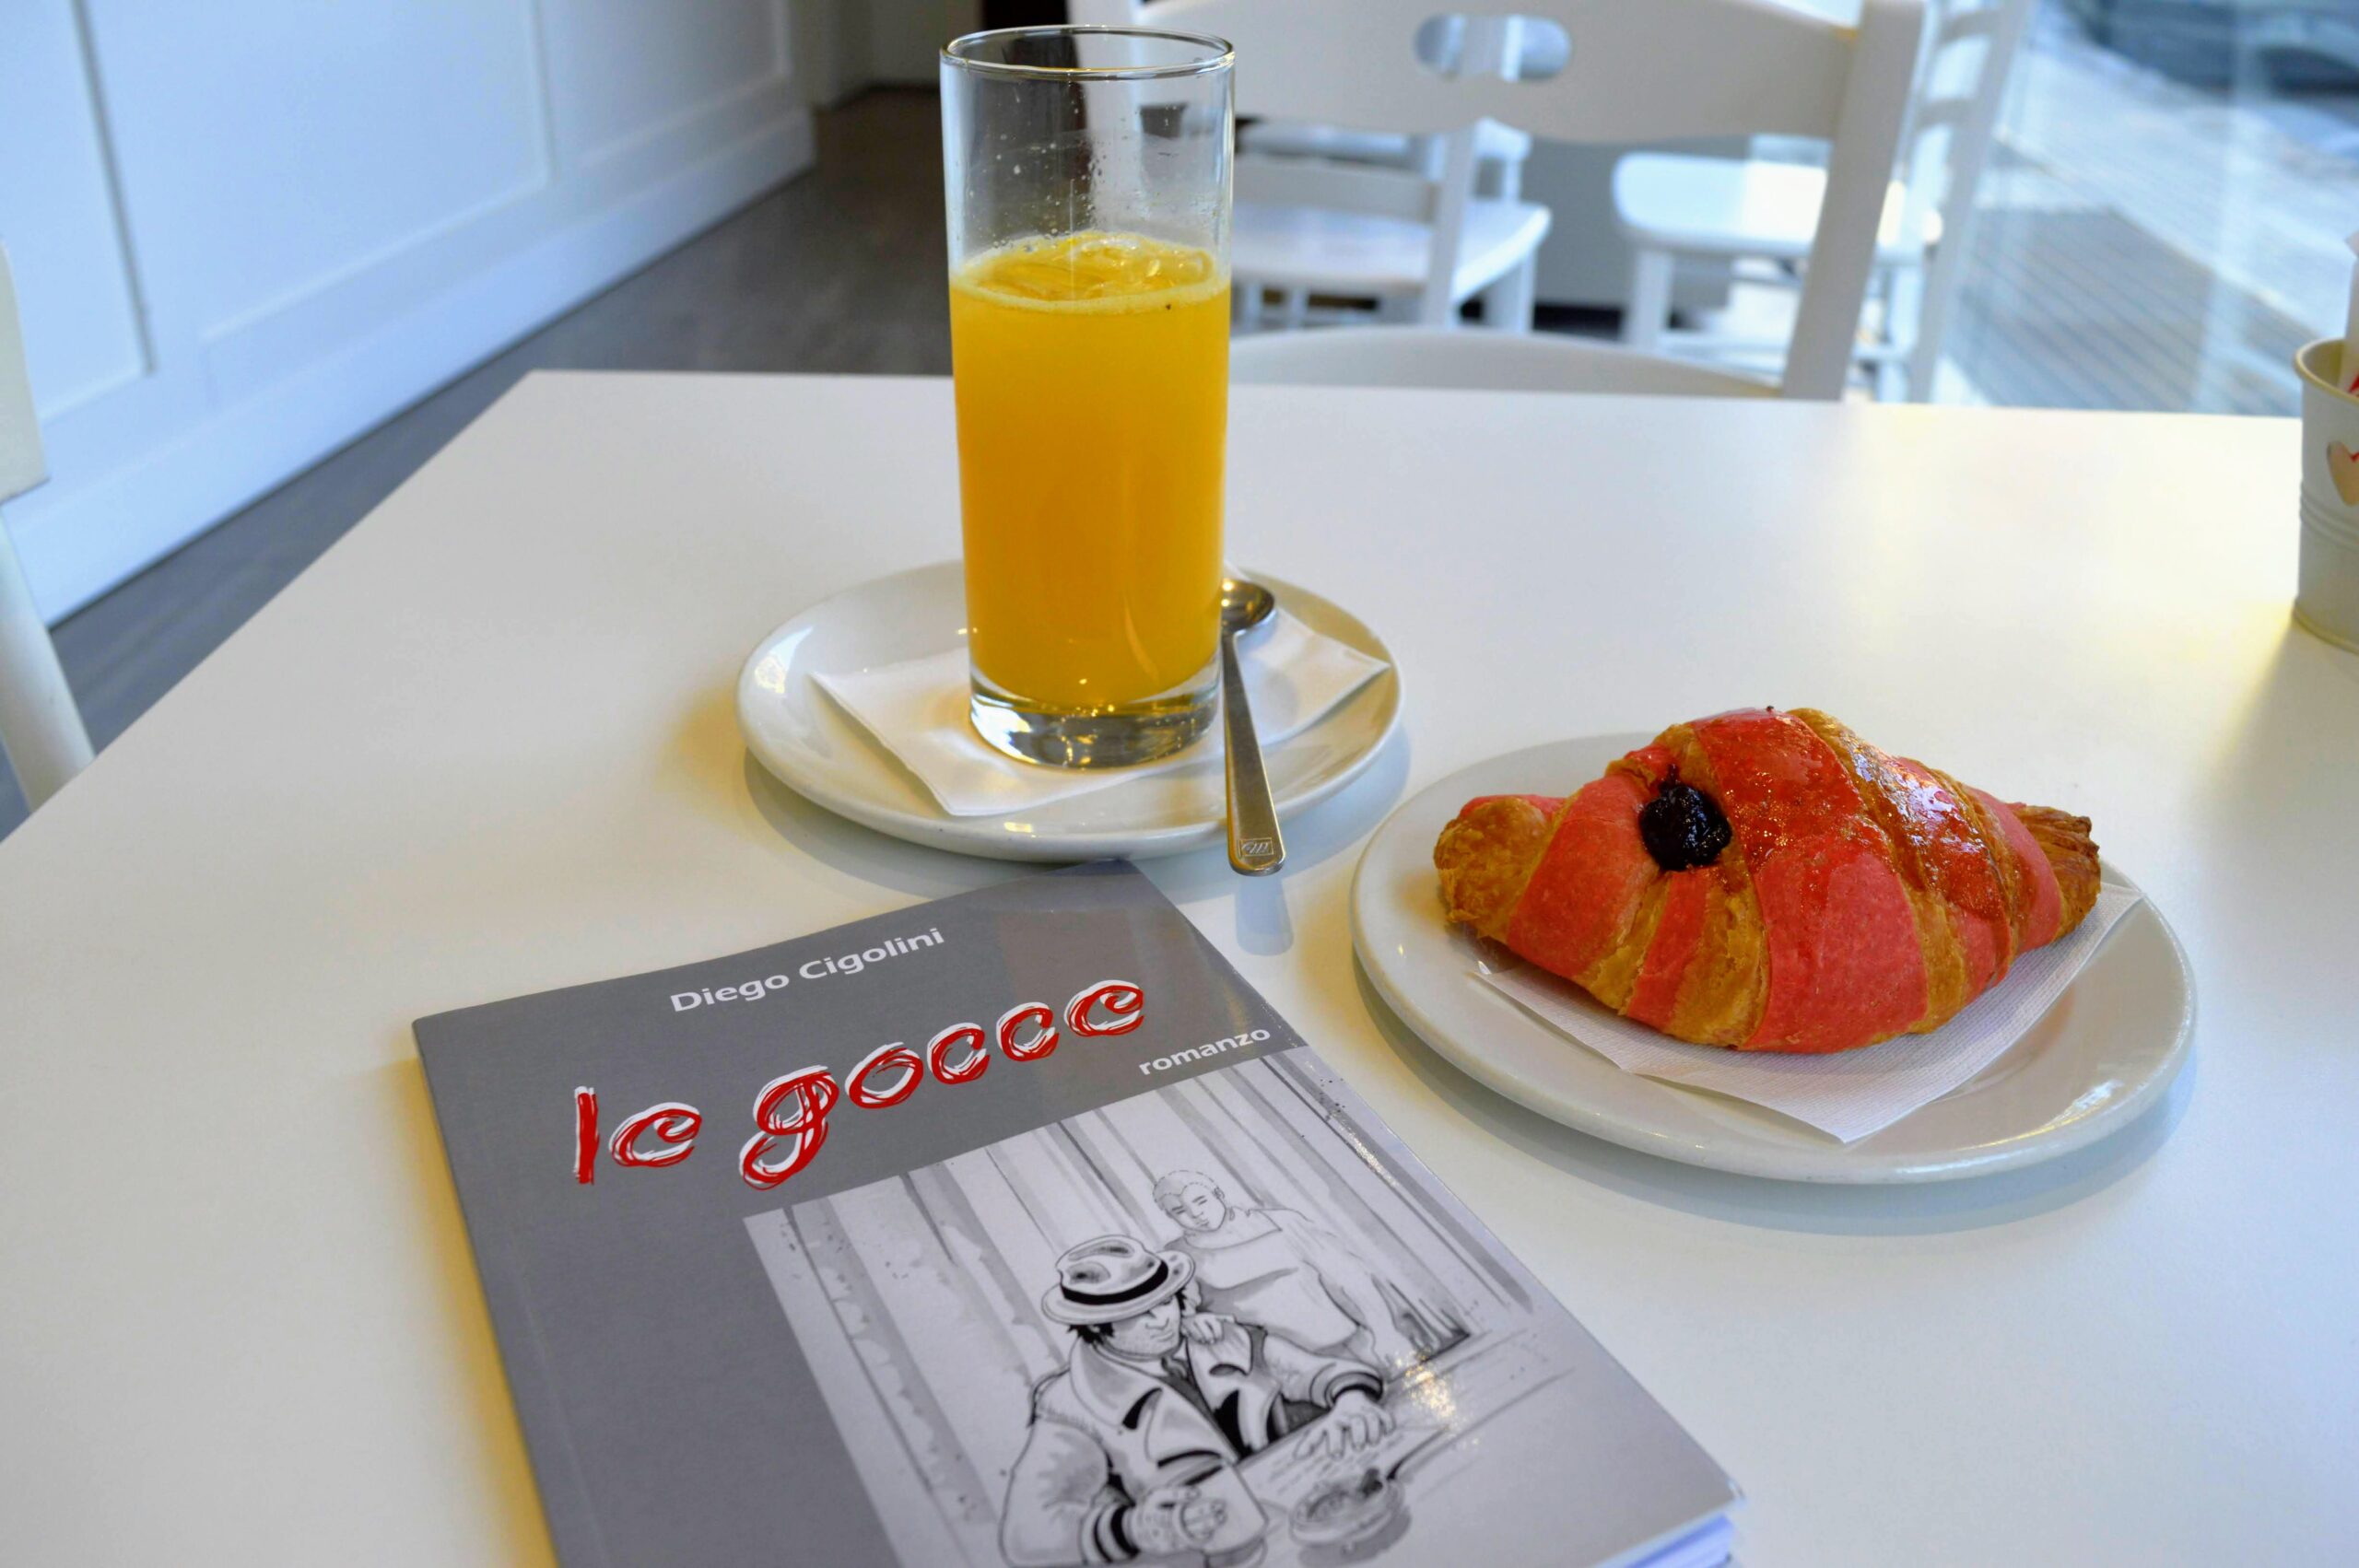 Biografia e recensione libro “Le gocce” di Diego Cigolini